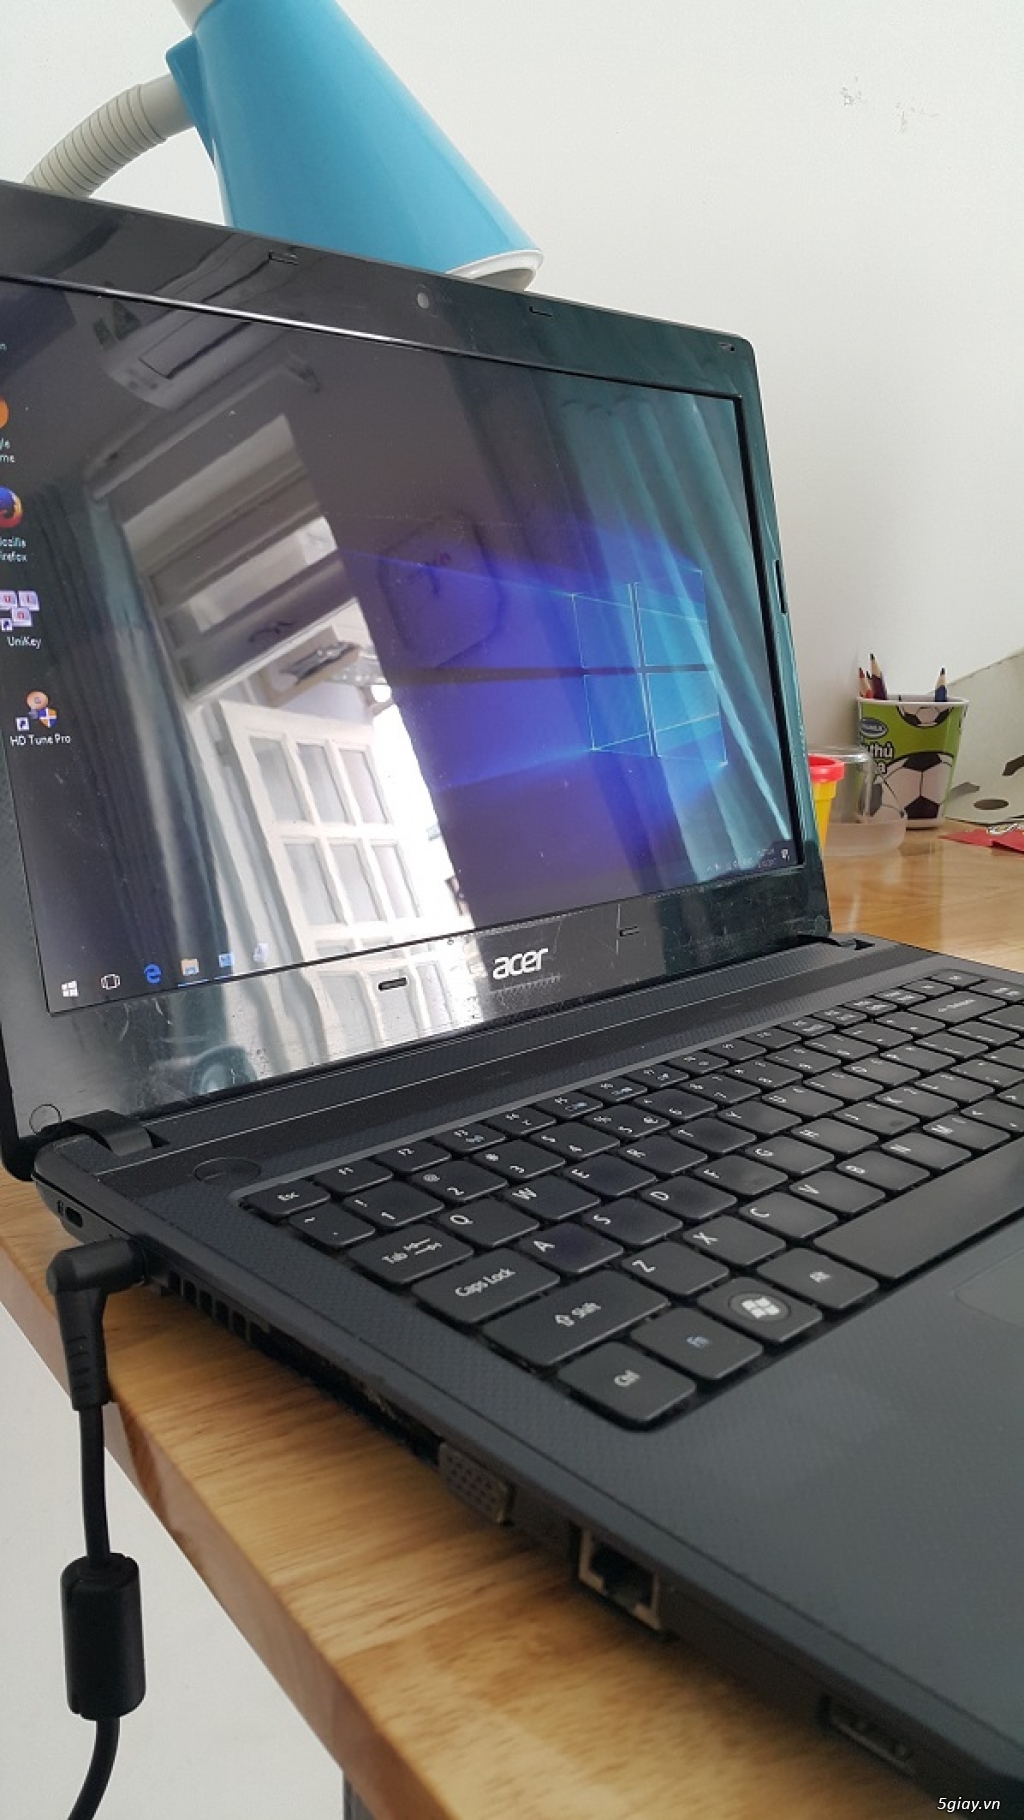 HCM-Bán Laptop Acer 4739 Core i3 còn dùng ngon, giá rẻ nhất 1T900K - 1